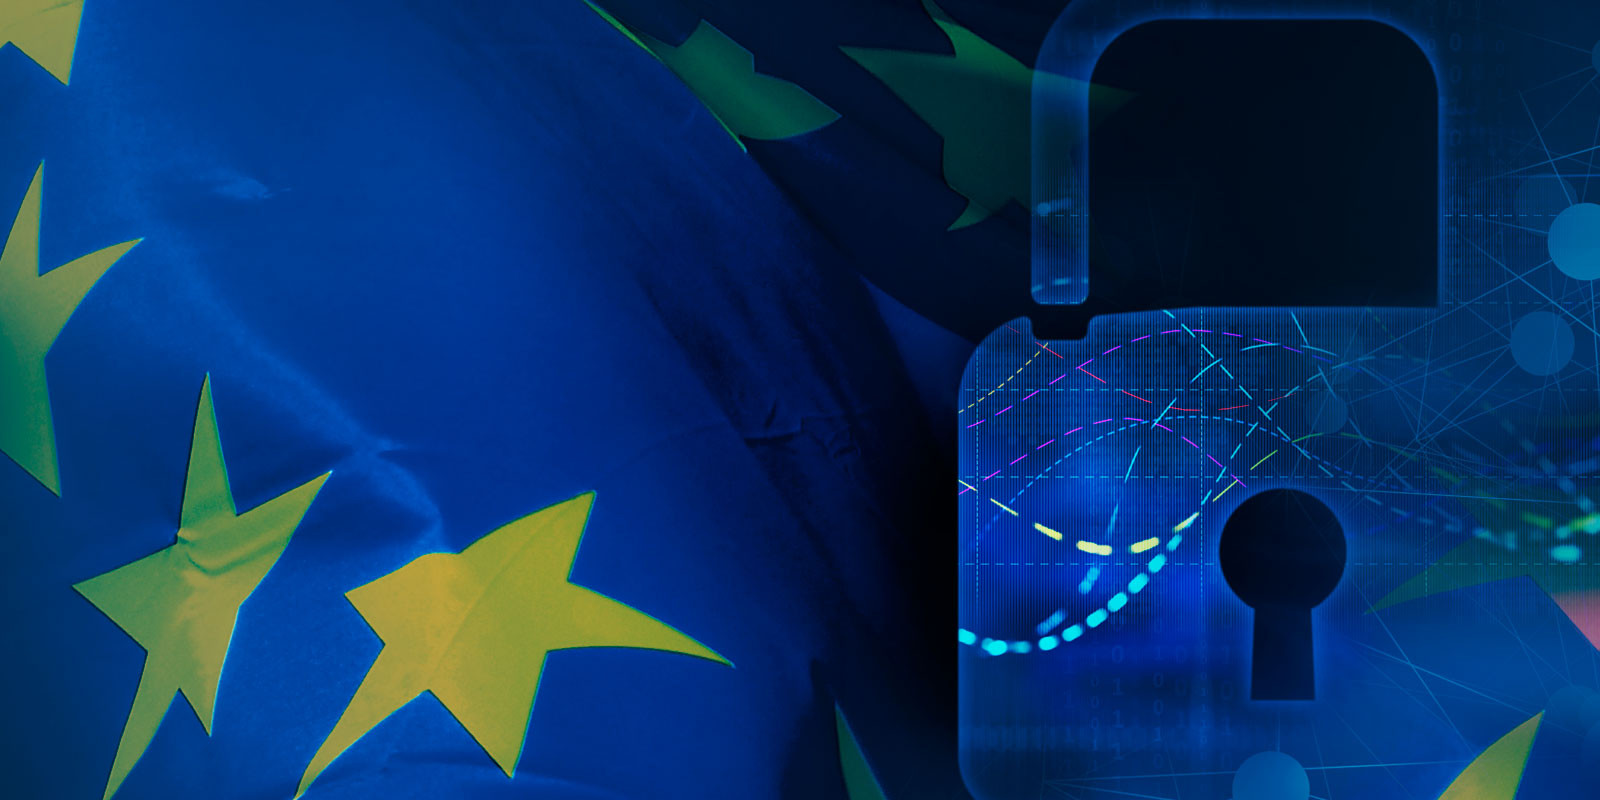 An ninh mạng cho SME: Thách thức và khuyến nghị của Liên minh châu Âu (Phần 2) - Ảnh 1.